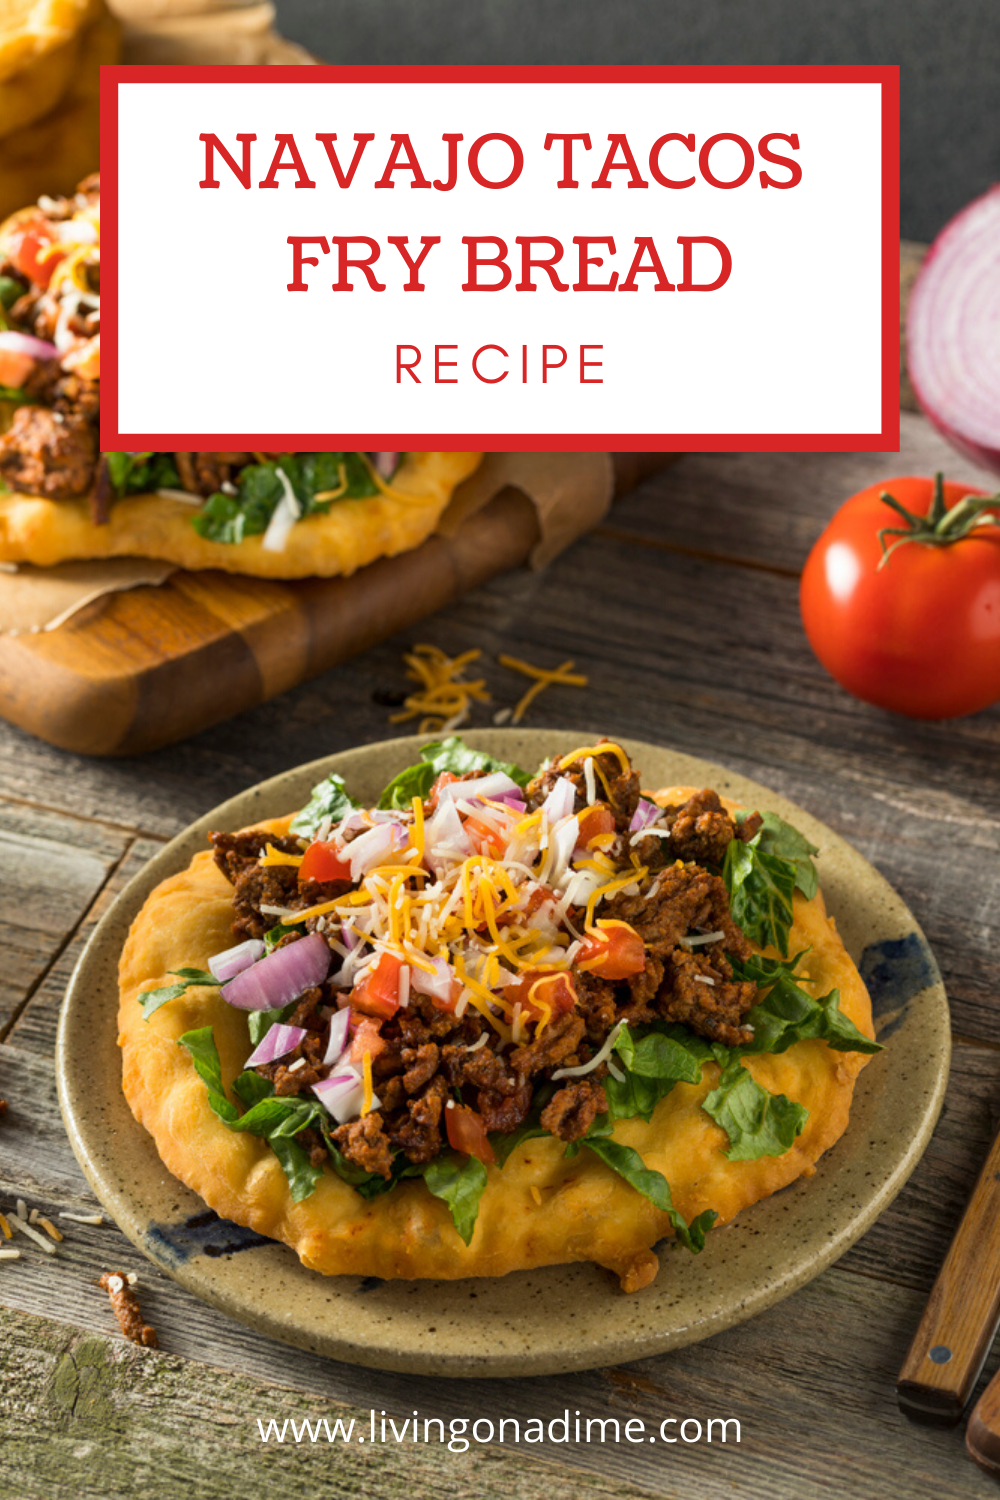 Navajo Fry Bread Recipe - Quick And Easy Fry Bread Recipe